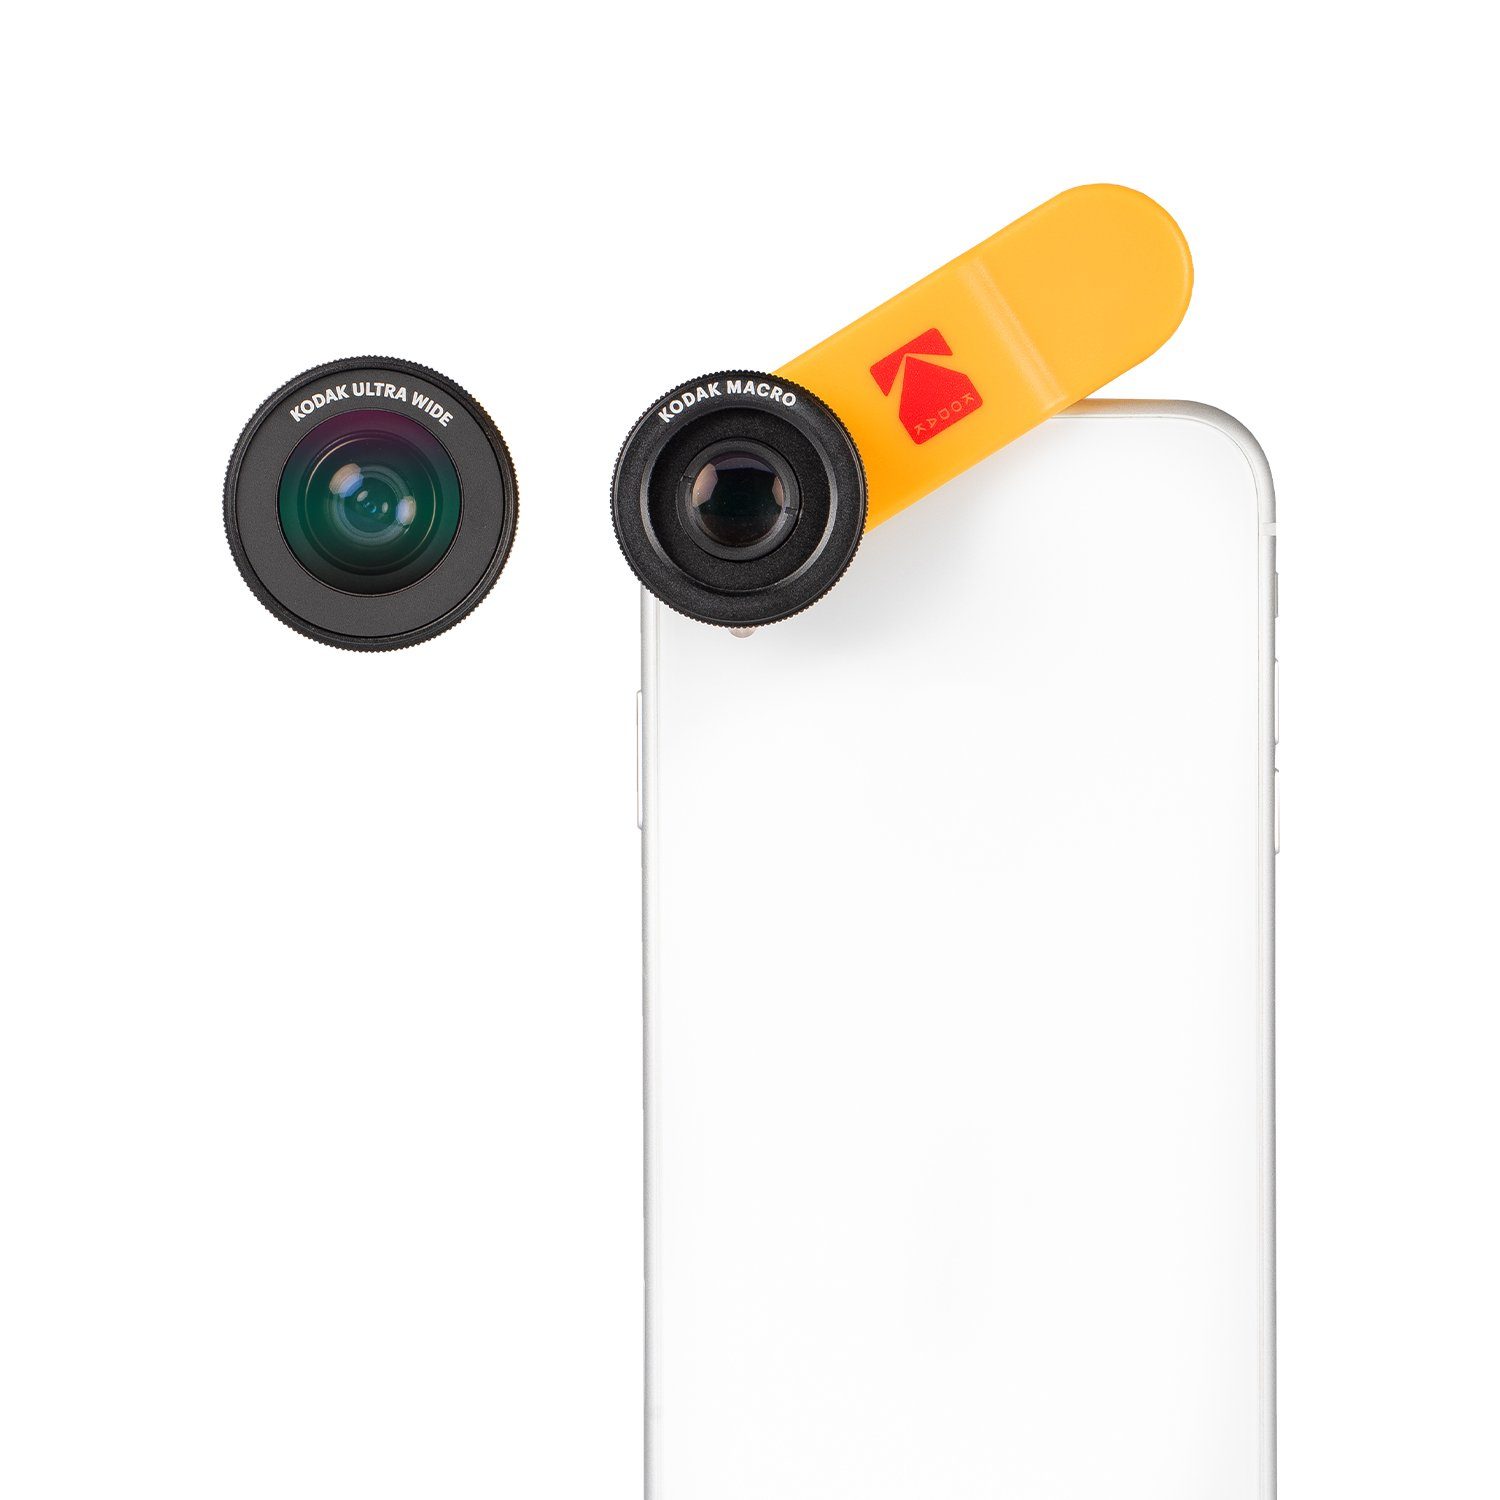 Kodak Objektiv, (2-in-1 Vorsatzlinsen-Set für Smartphones bestehend aus 100° Weitwinkel- und 15x Makro-Objektiv (Universelle Clip-Befestigung, Funktioniert auch mit MultiCams & Frontkameras) - KSM001)